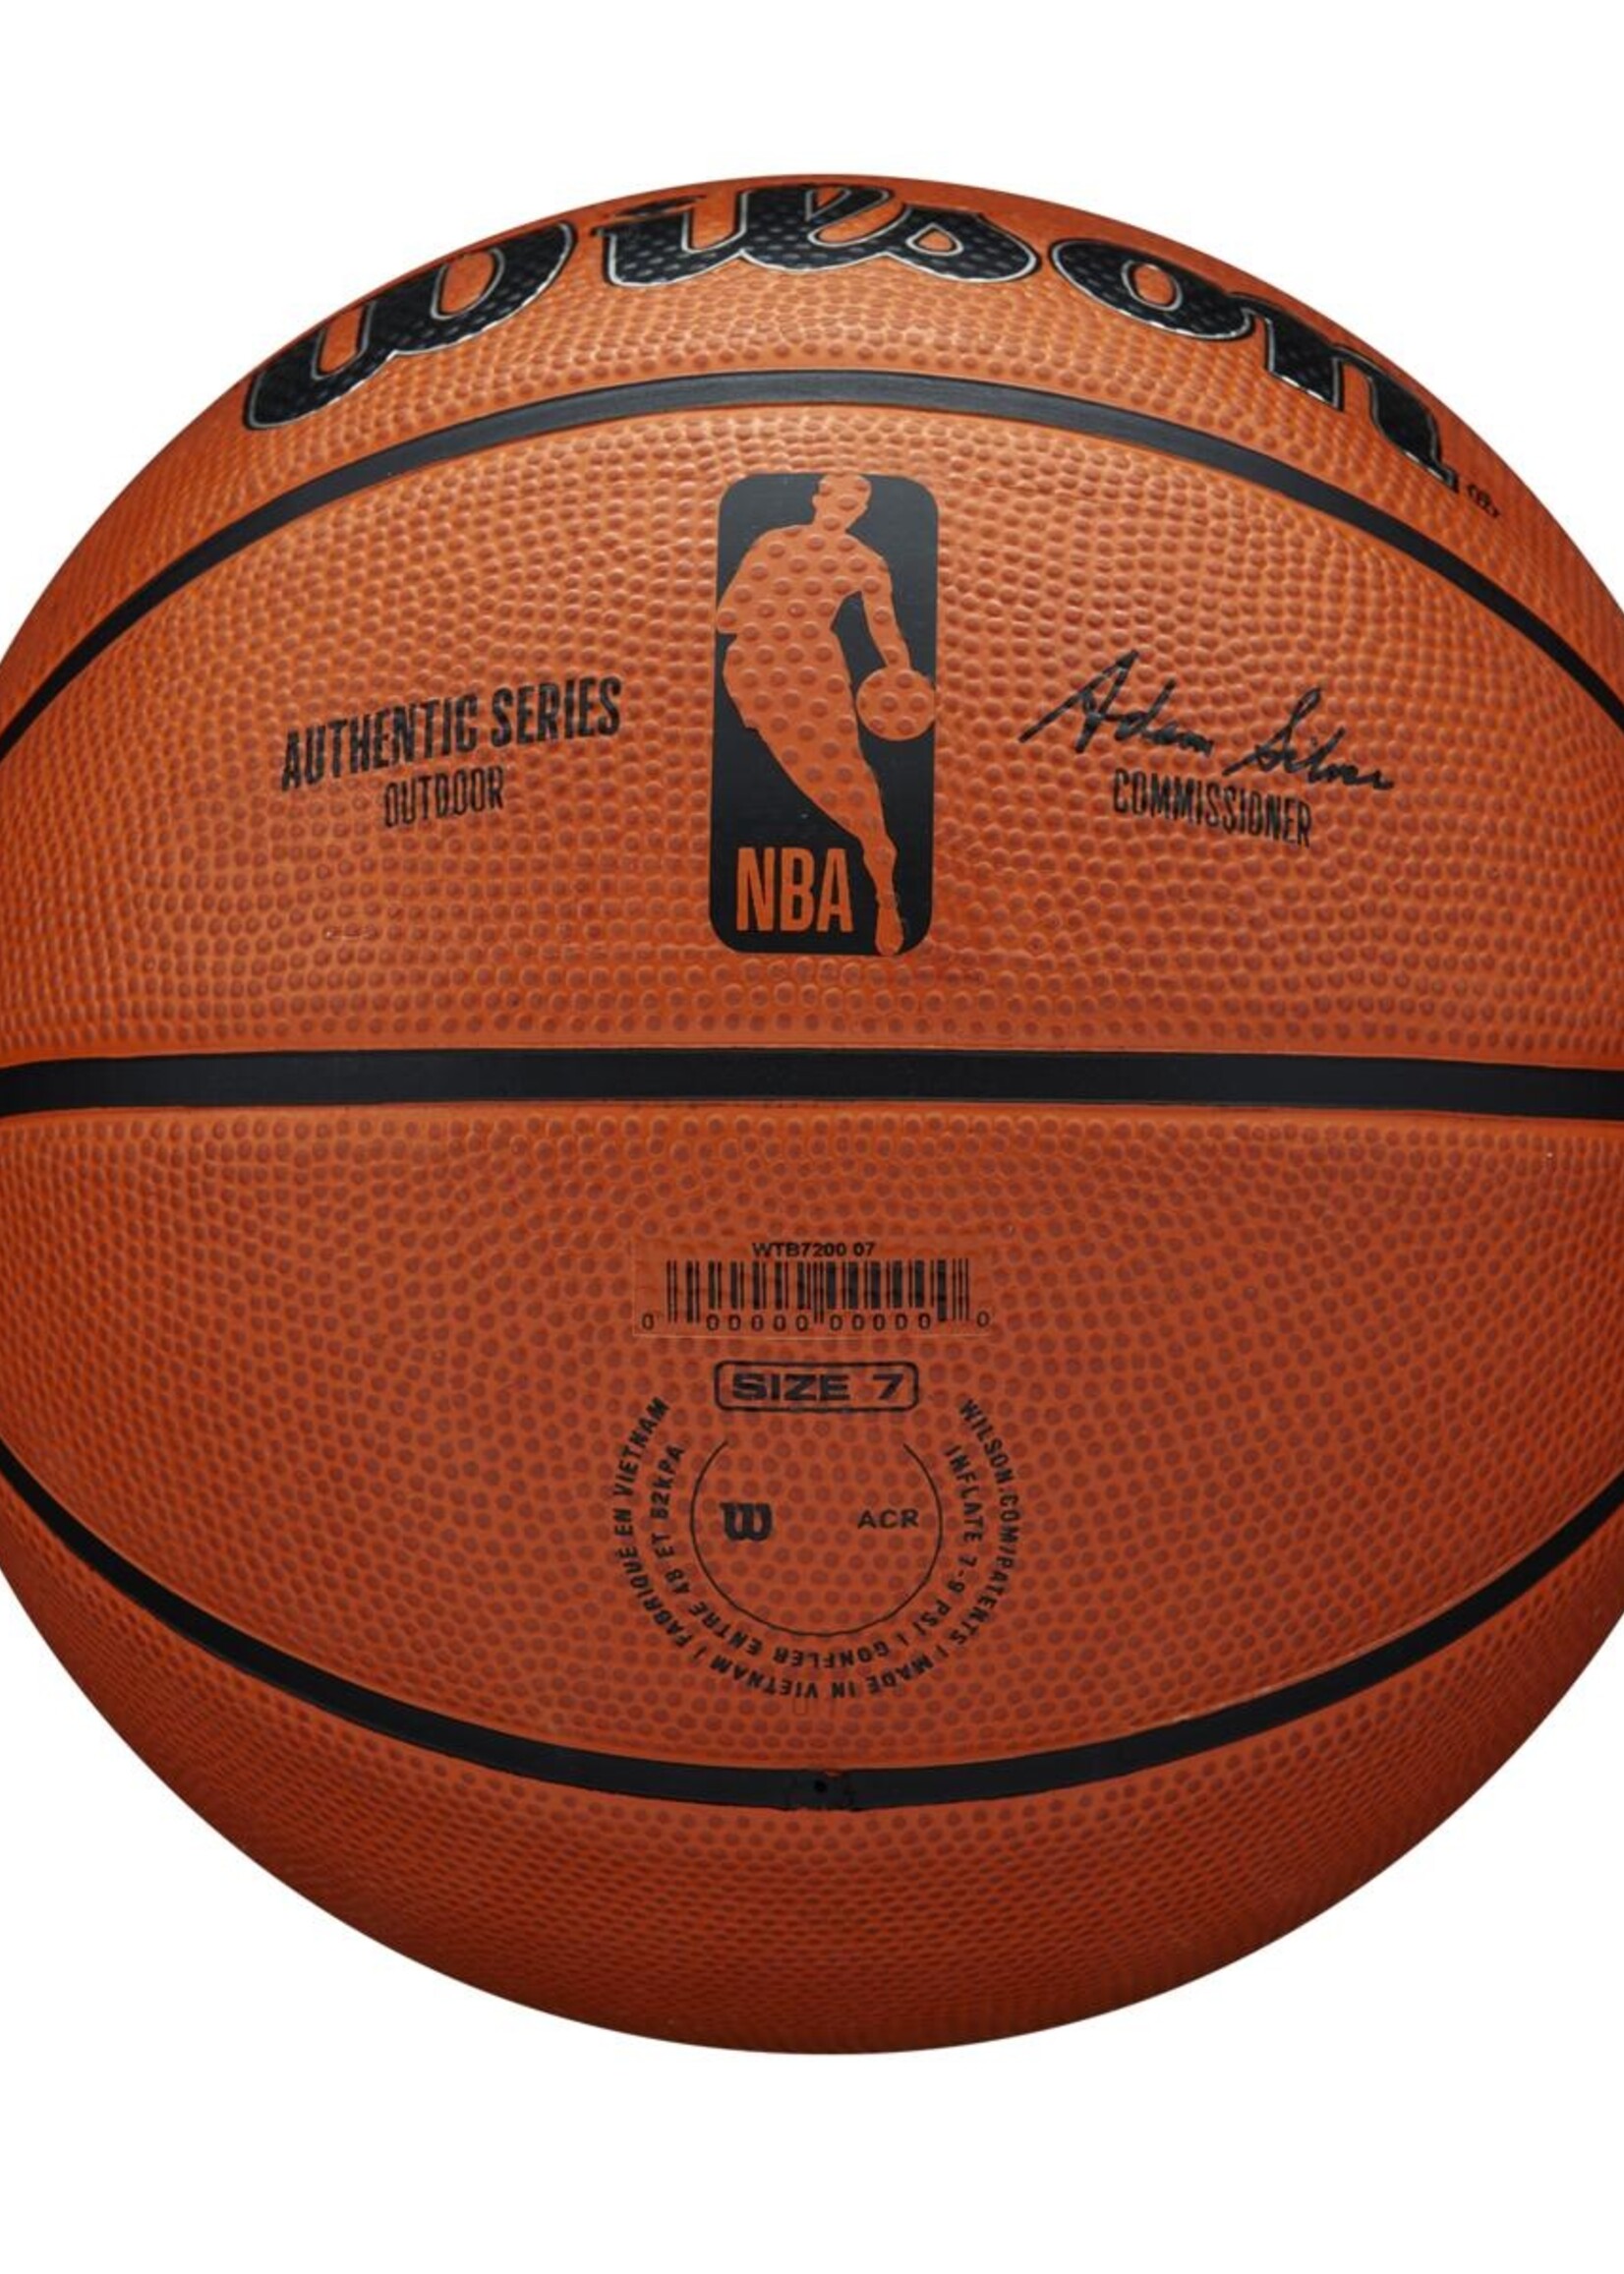 Wilson Wilson NBA Authentic Series Outdoor Ballon De Basket (7)